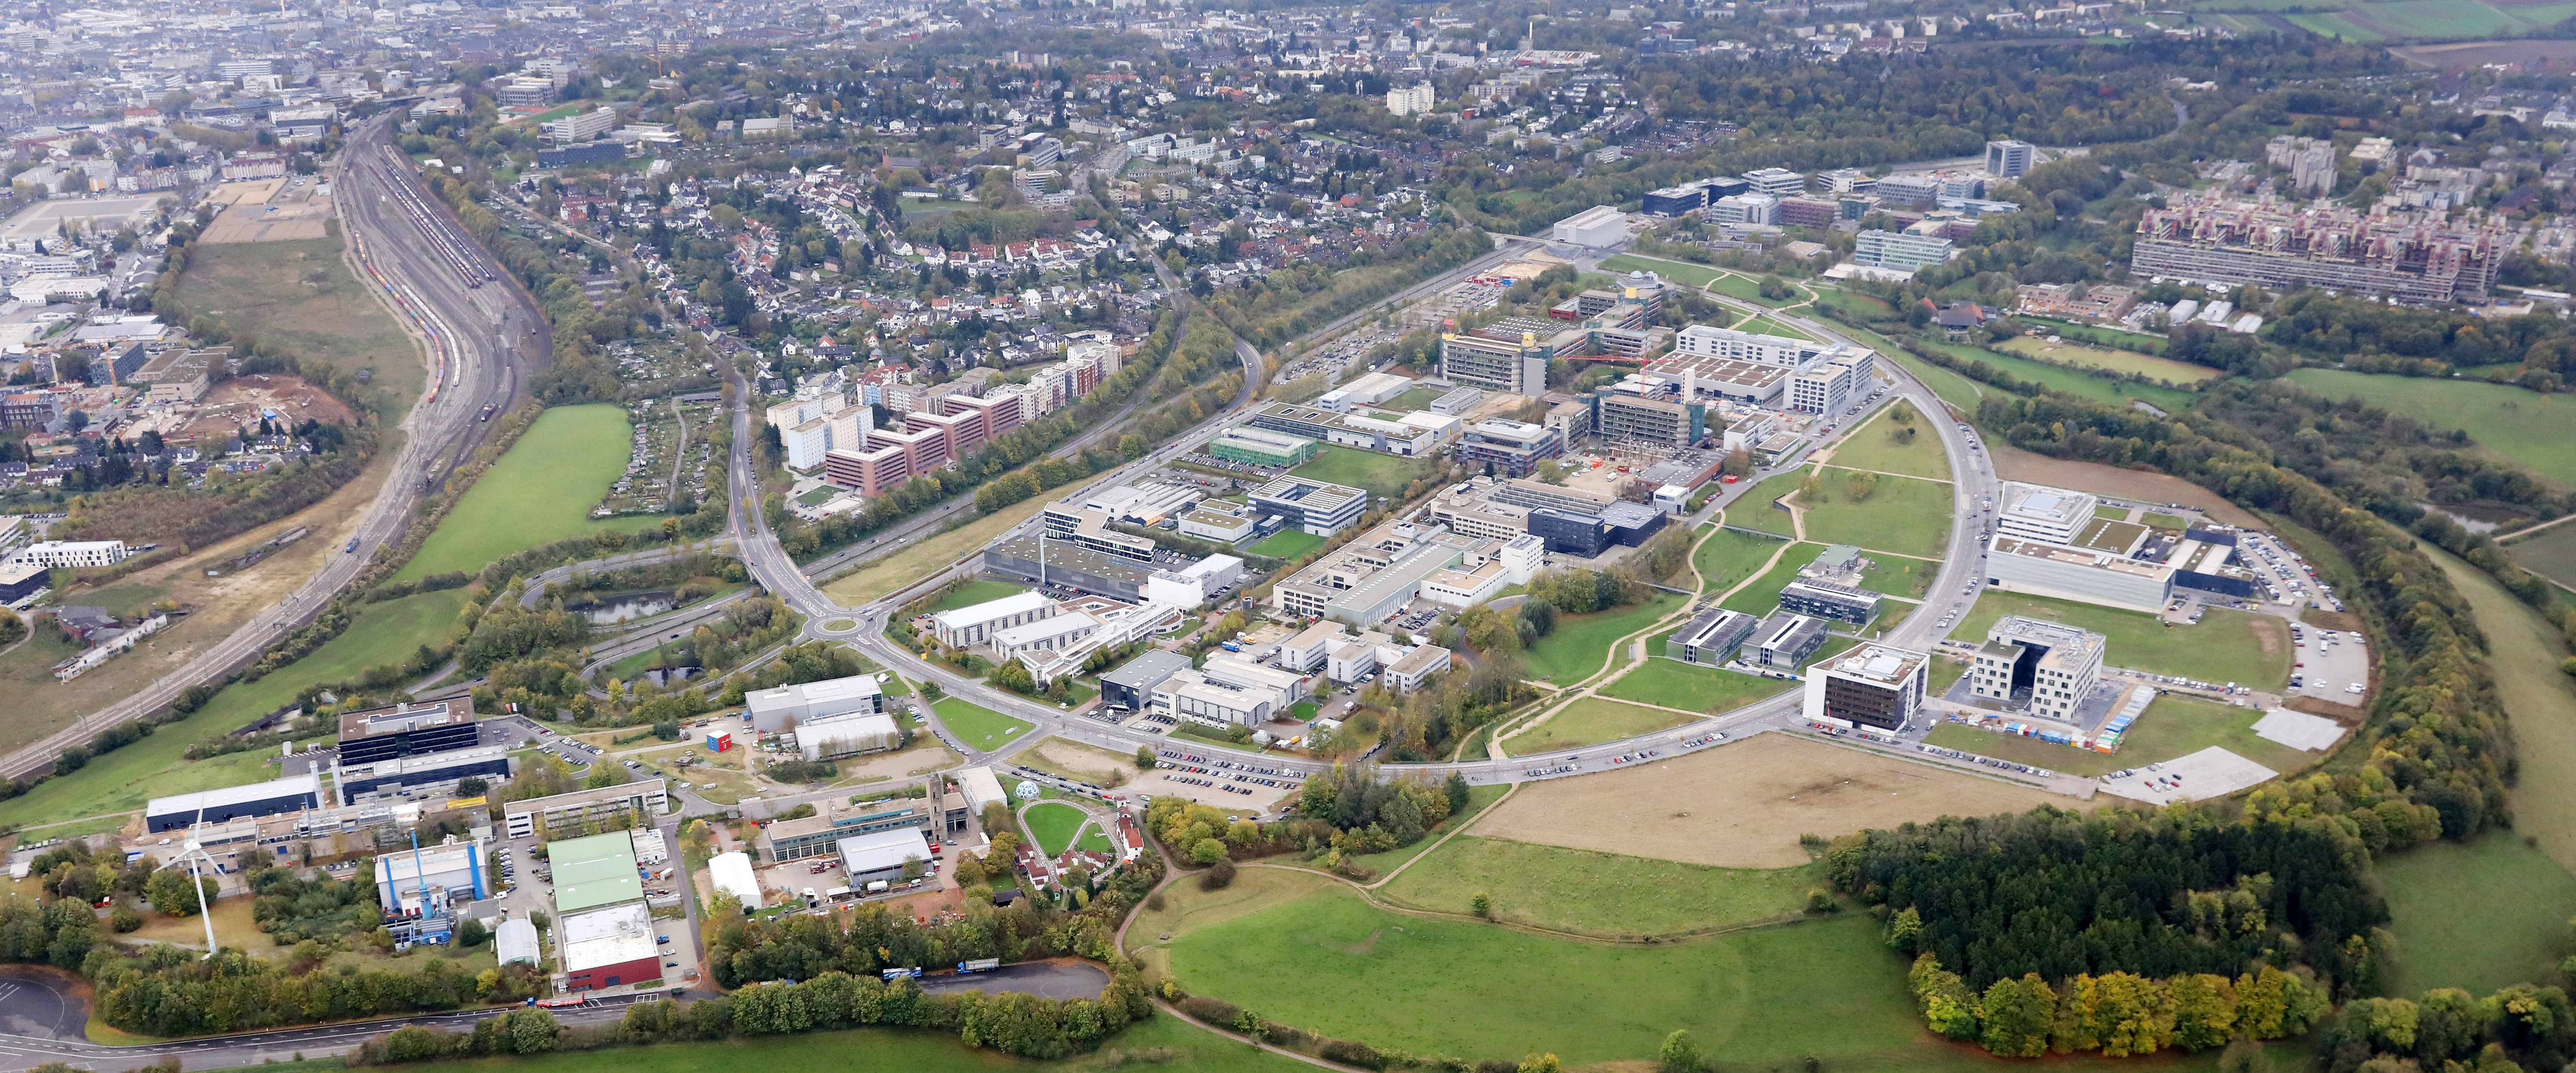 RWTH-Aachen-Campus©Campus-GmbH_Steindl